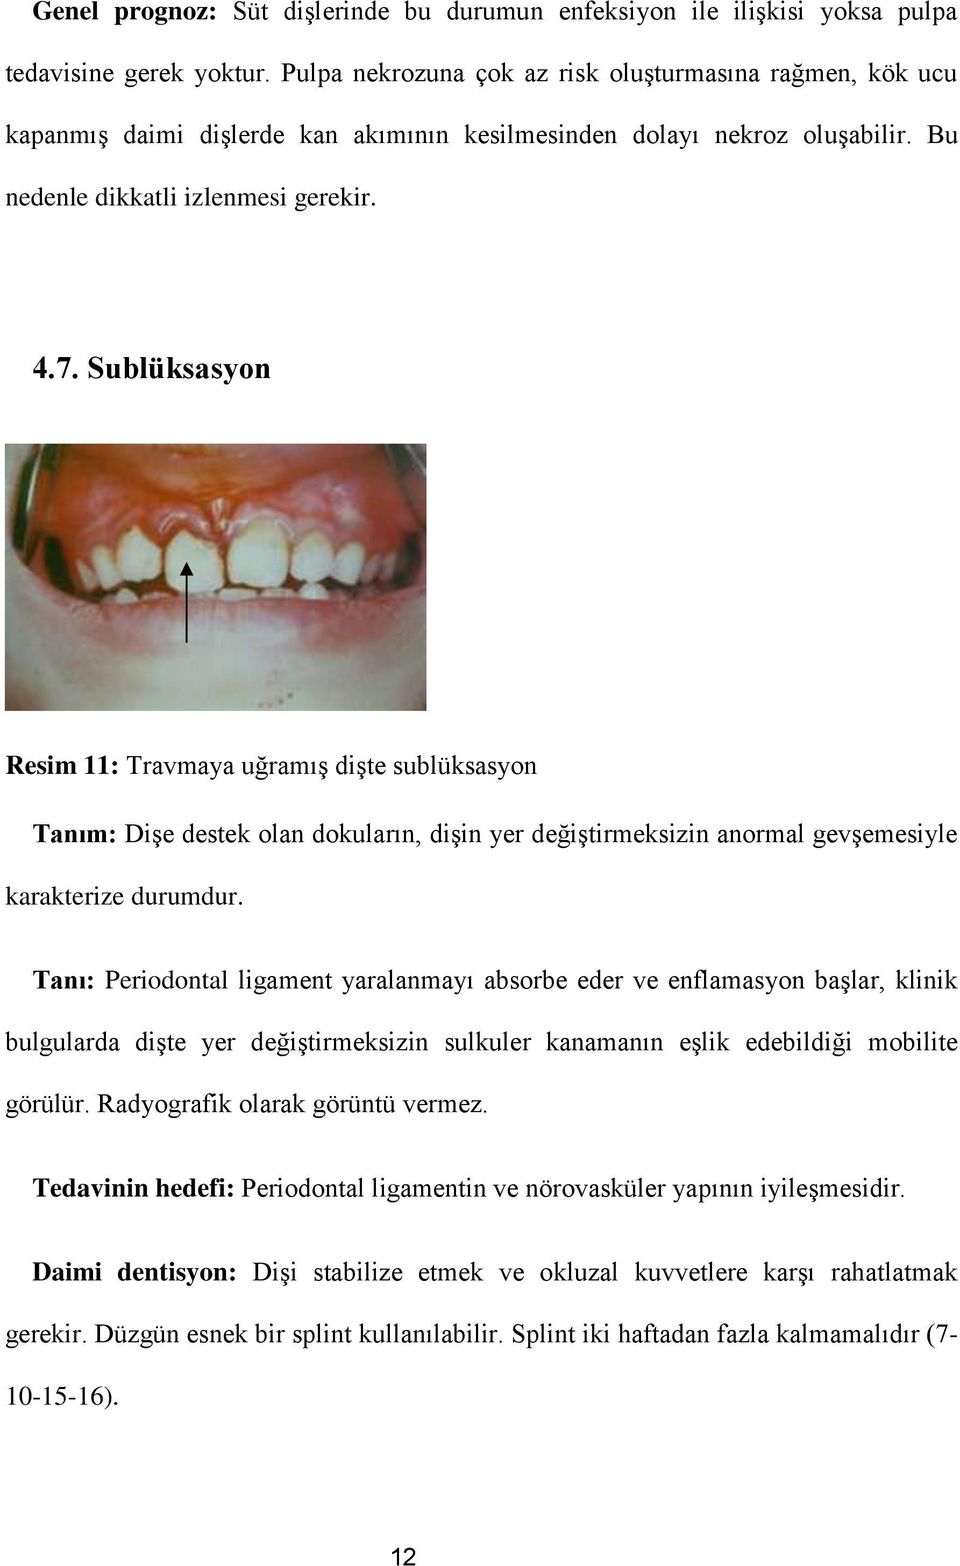 Sublüksasyon Resim 11: Travmaya uğramış dişte sublüksasyon Tanım: Dişe destek olan dokuların, dişin yer değiştirmeksizin anormal gevşemesiyle karakterize durumdur.